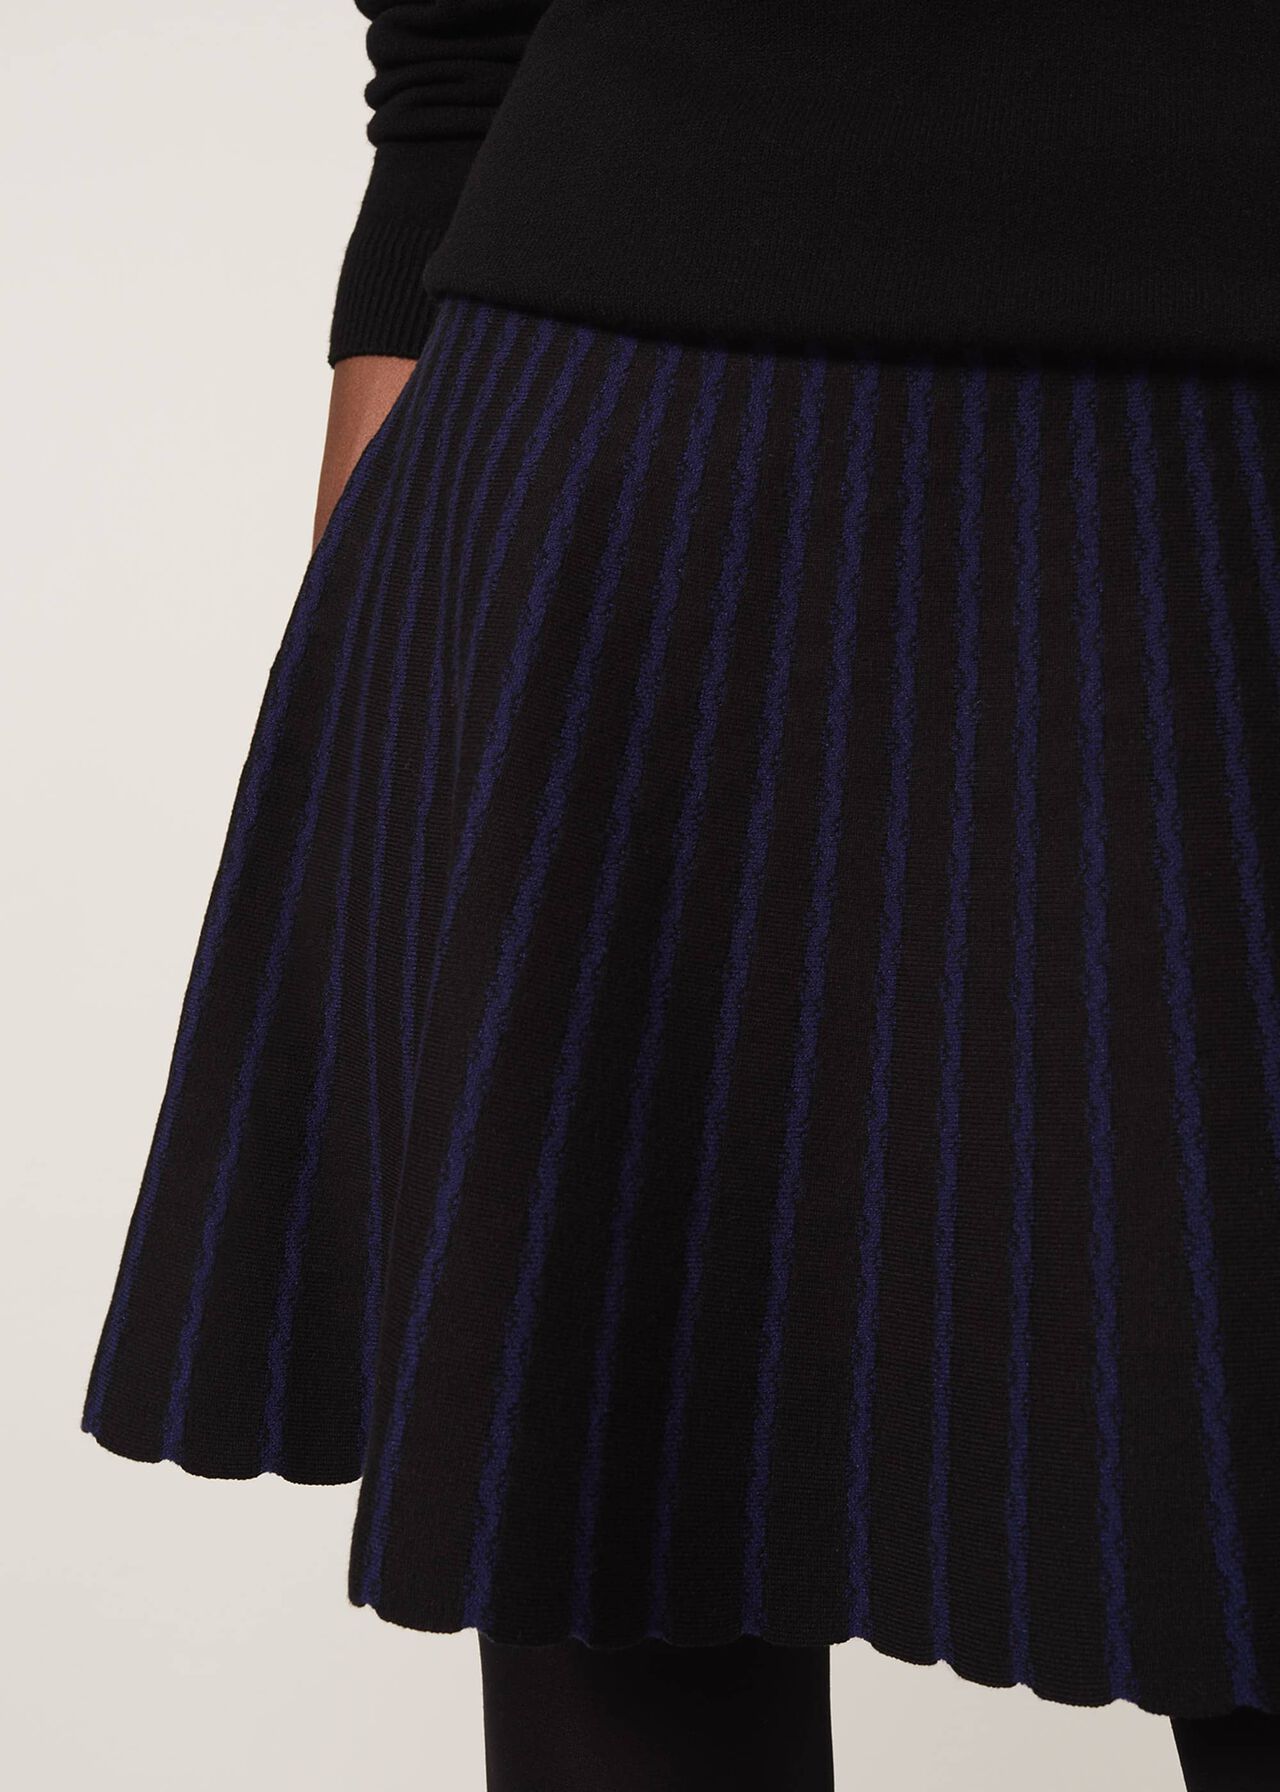 Hana Jacquard Knit Skirt